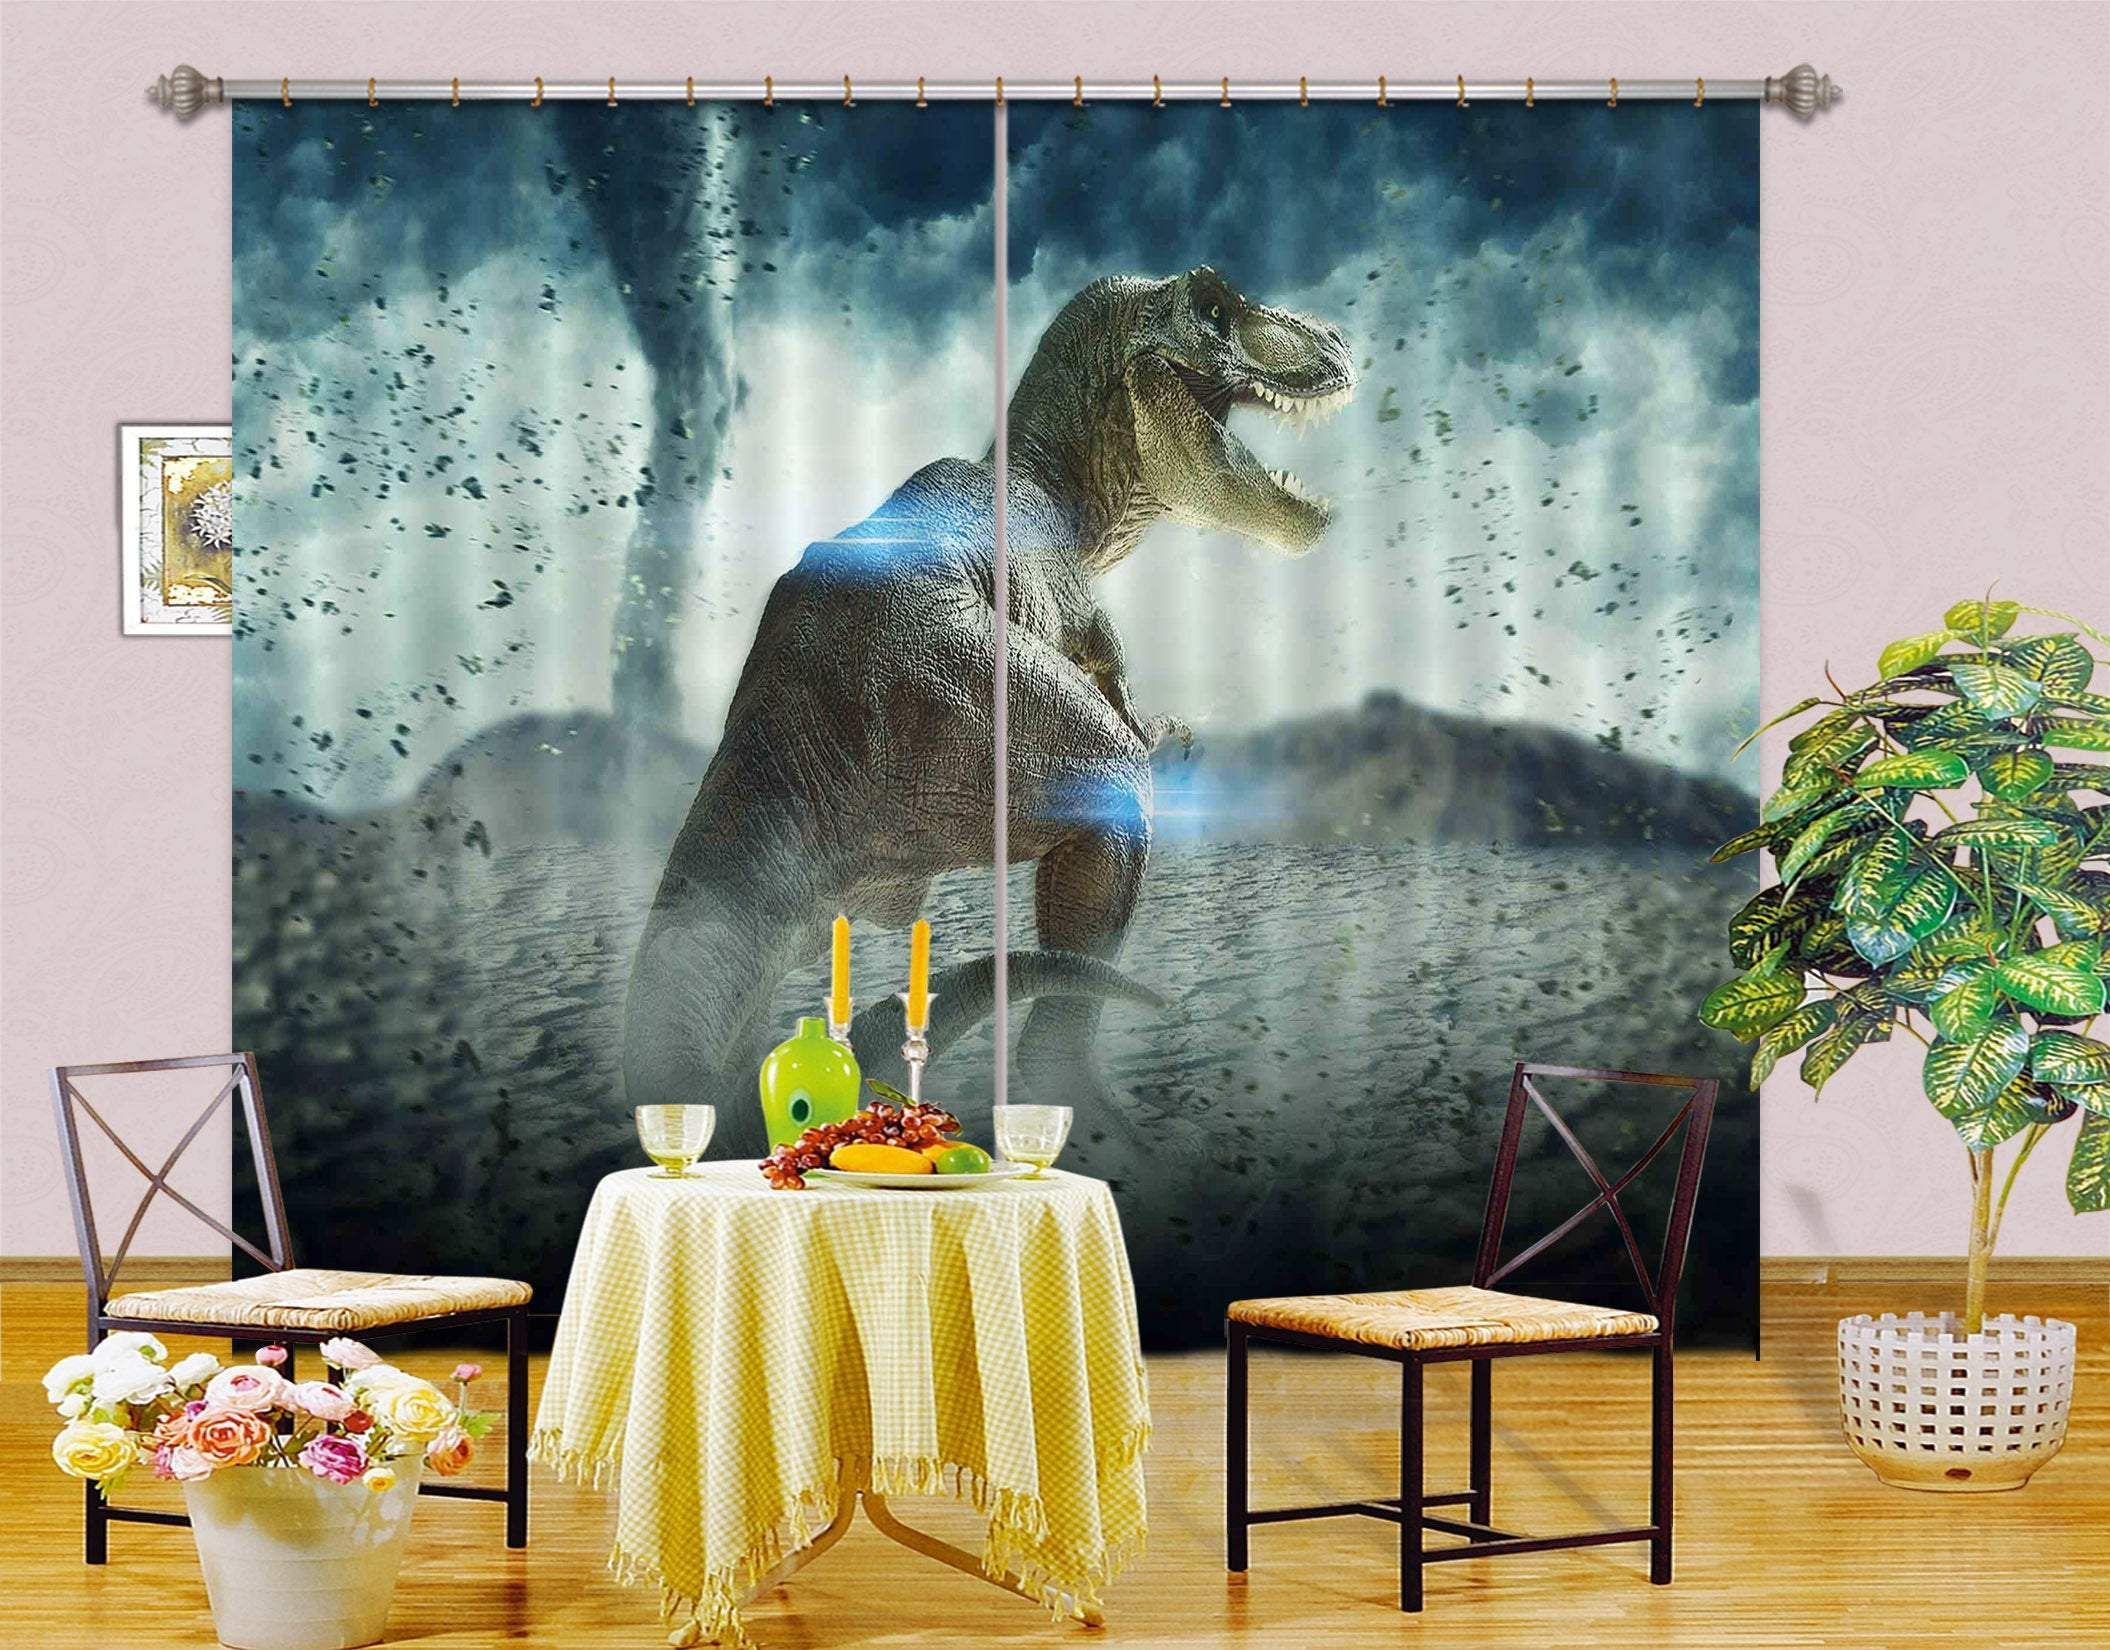 Dinosaur With Tornado Wild Life Printed Window Curtain